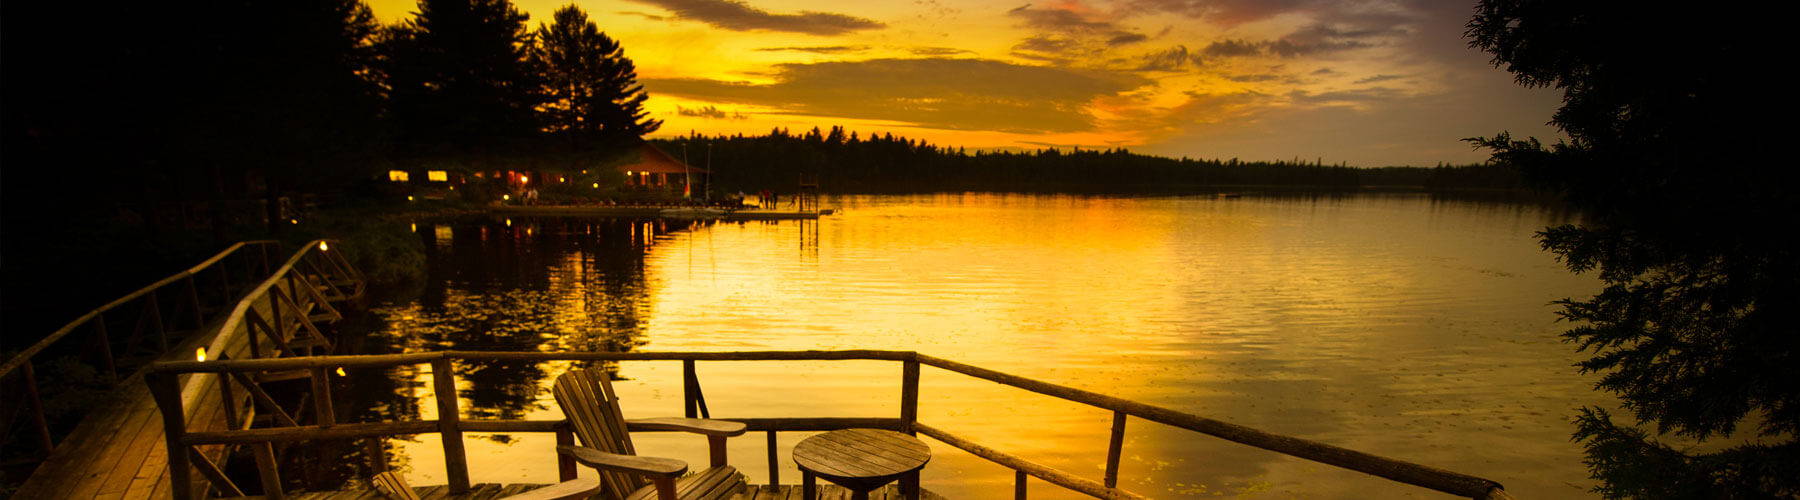 cottage lake at sunset